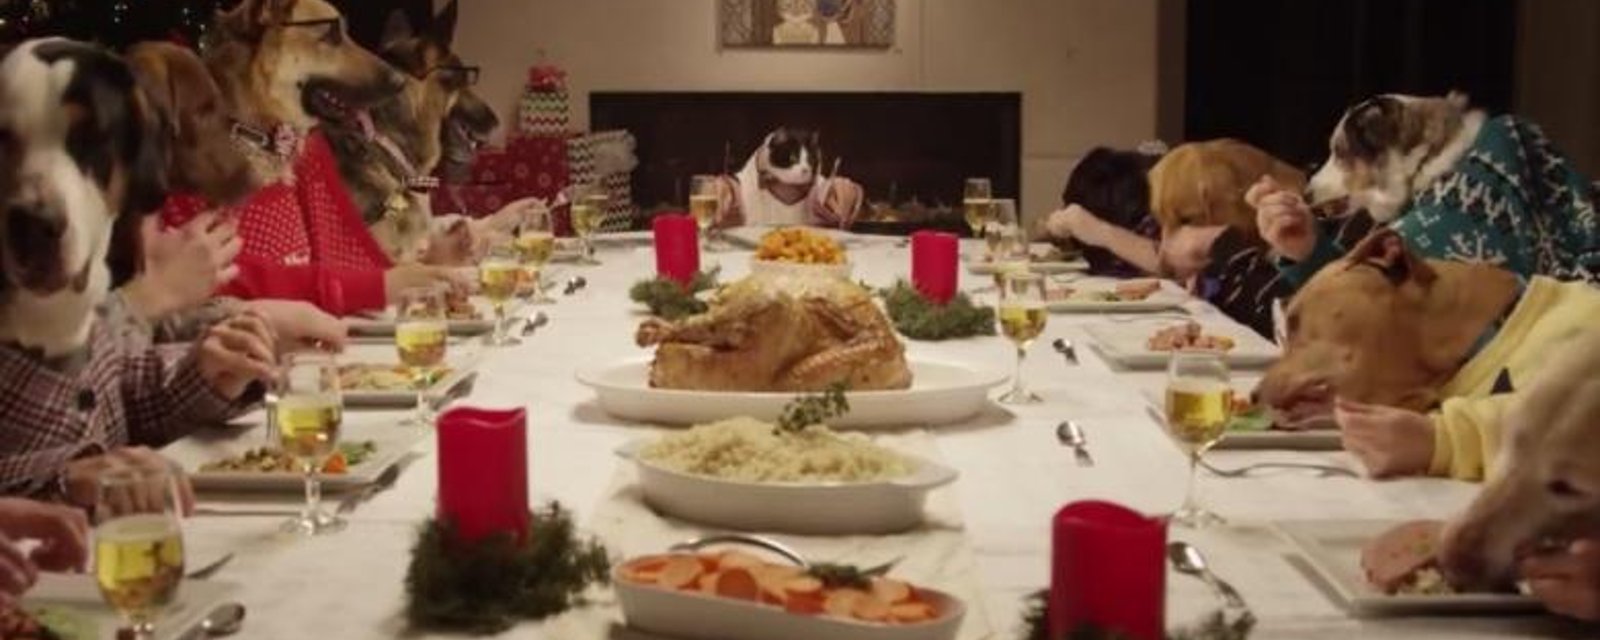 Des animaux se réunissent pour un souper de Noël... Et c'est très drôle!!